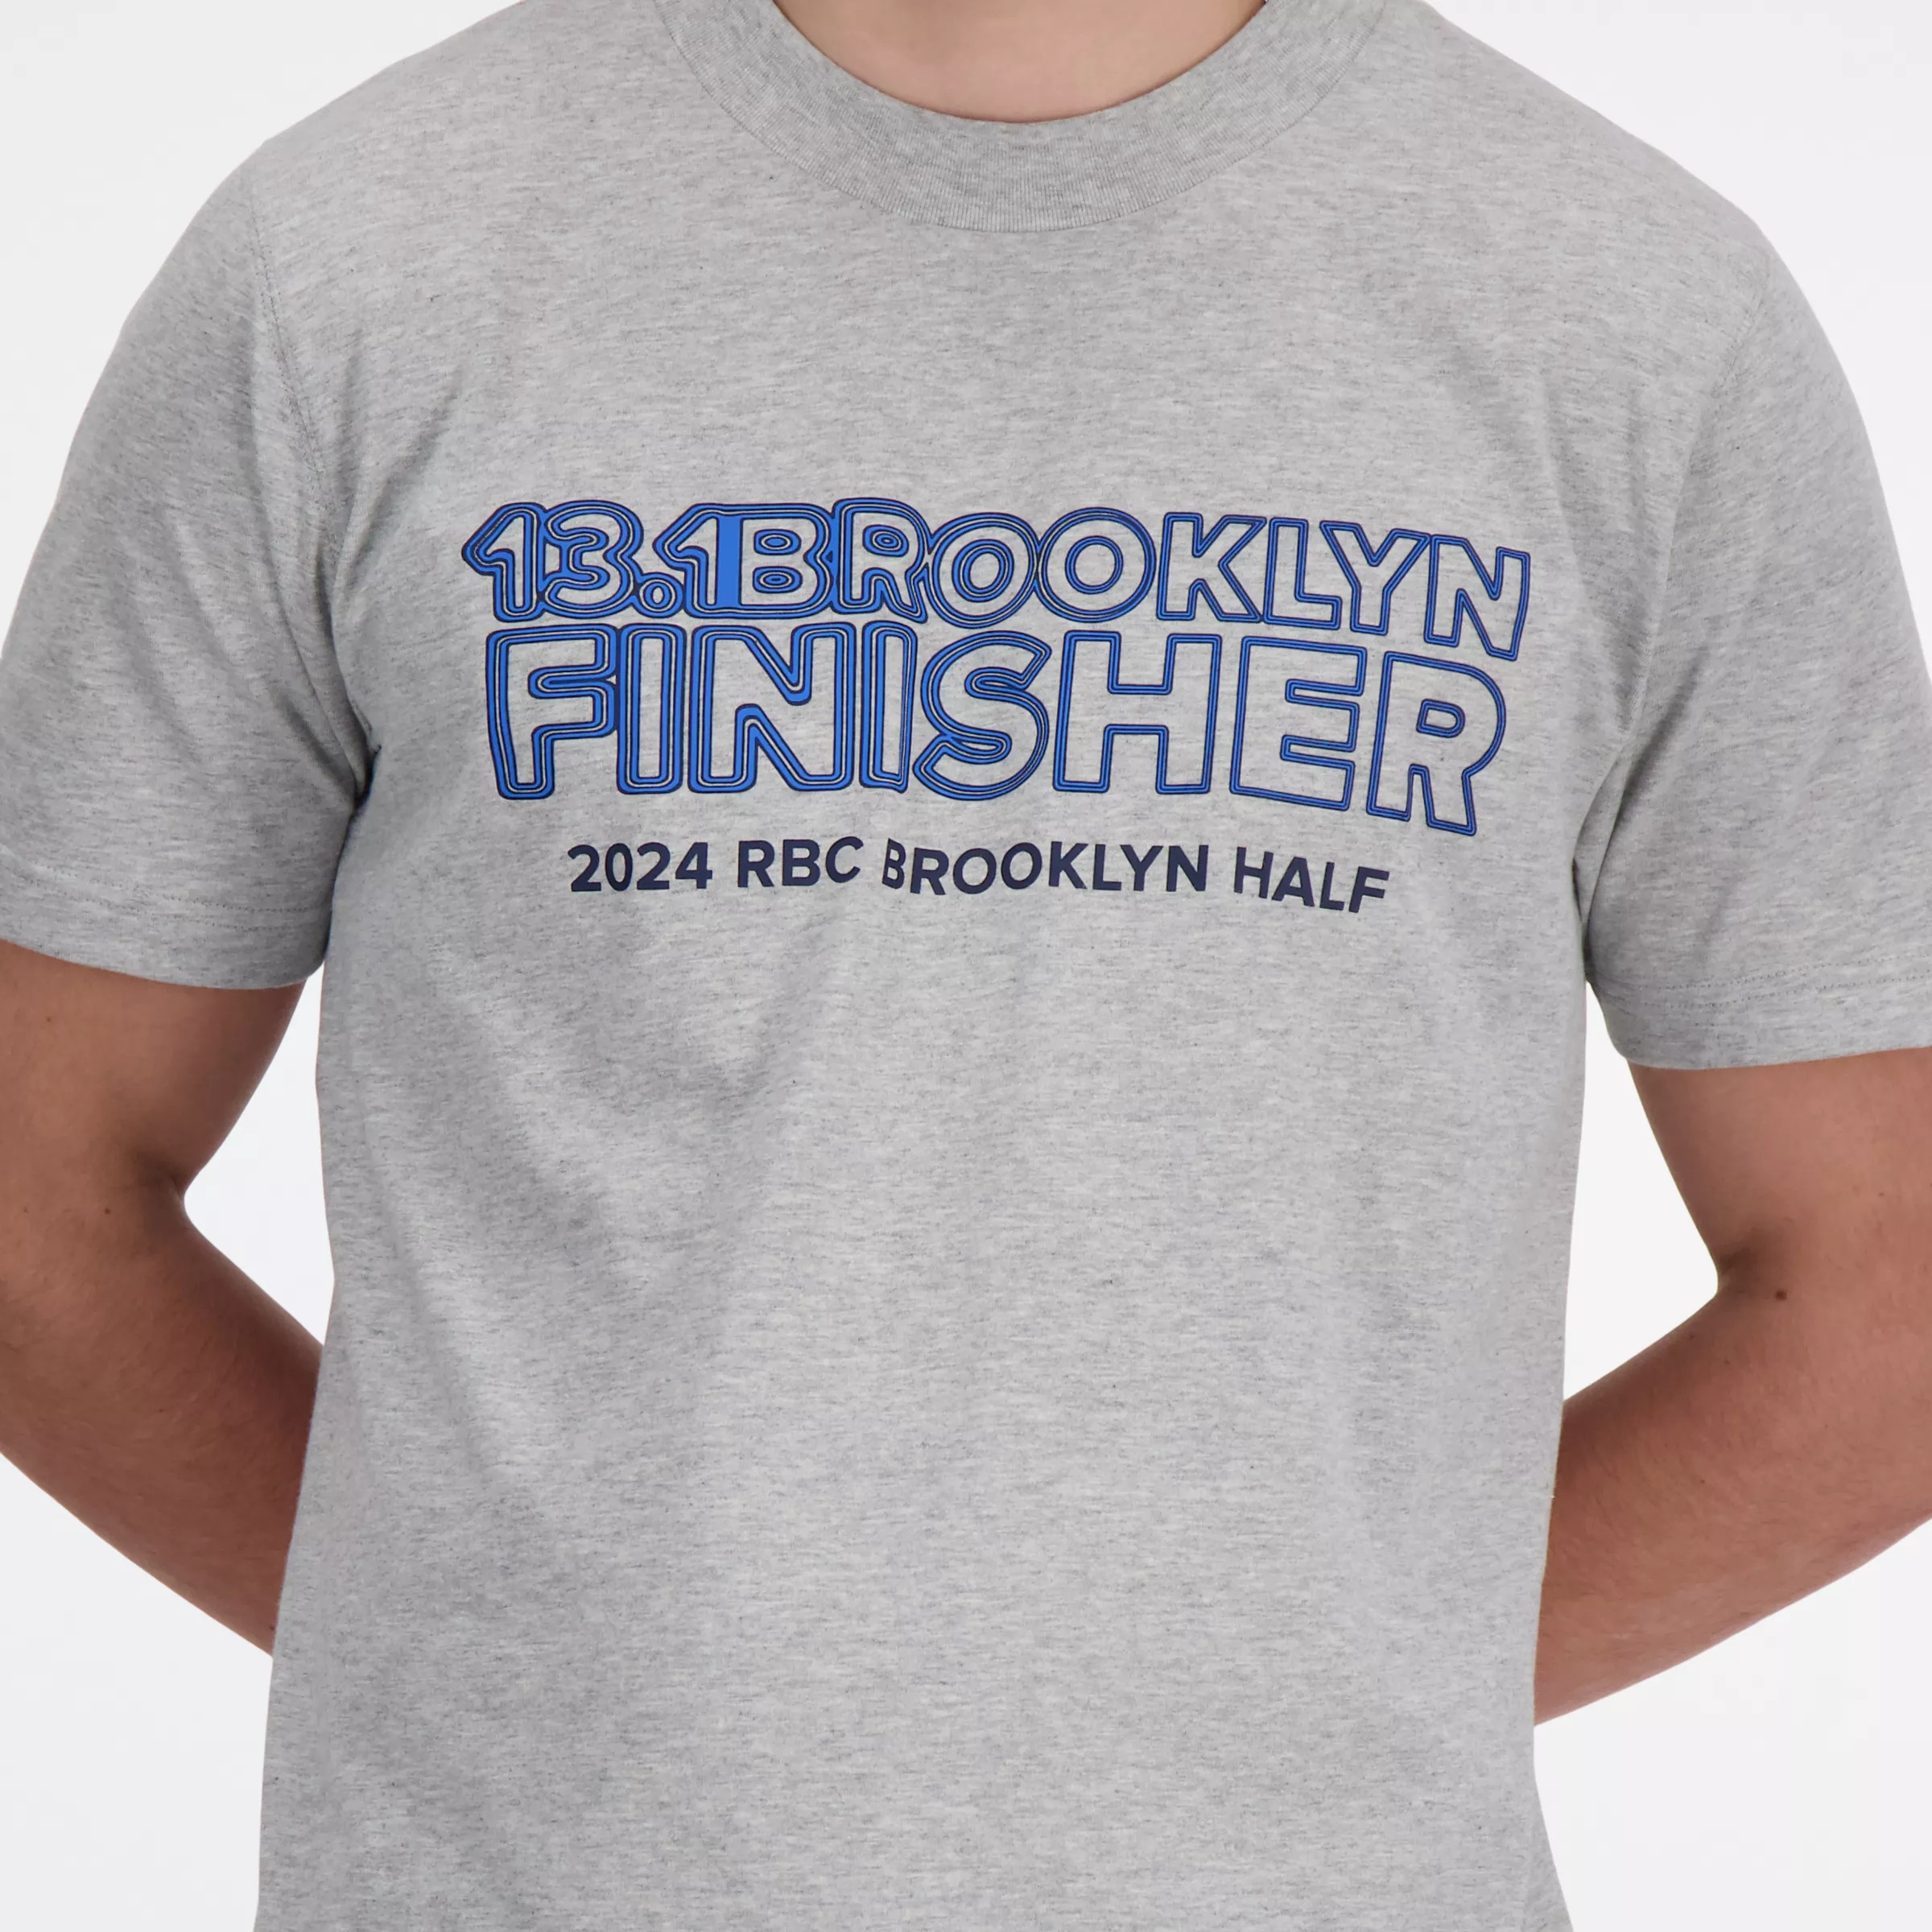 RBC Brooklyn Half Finisher T-Shirt - 2